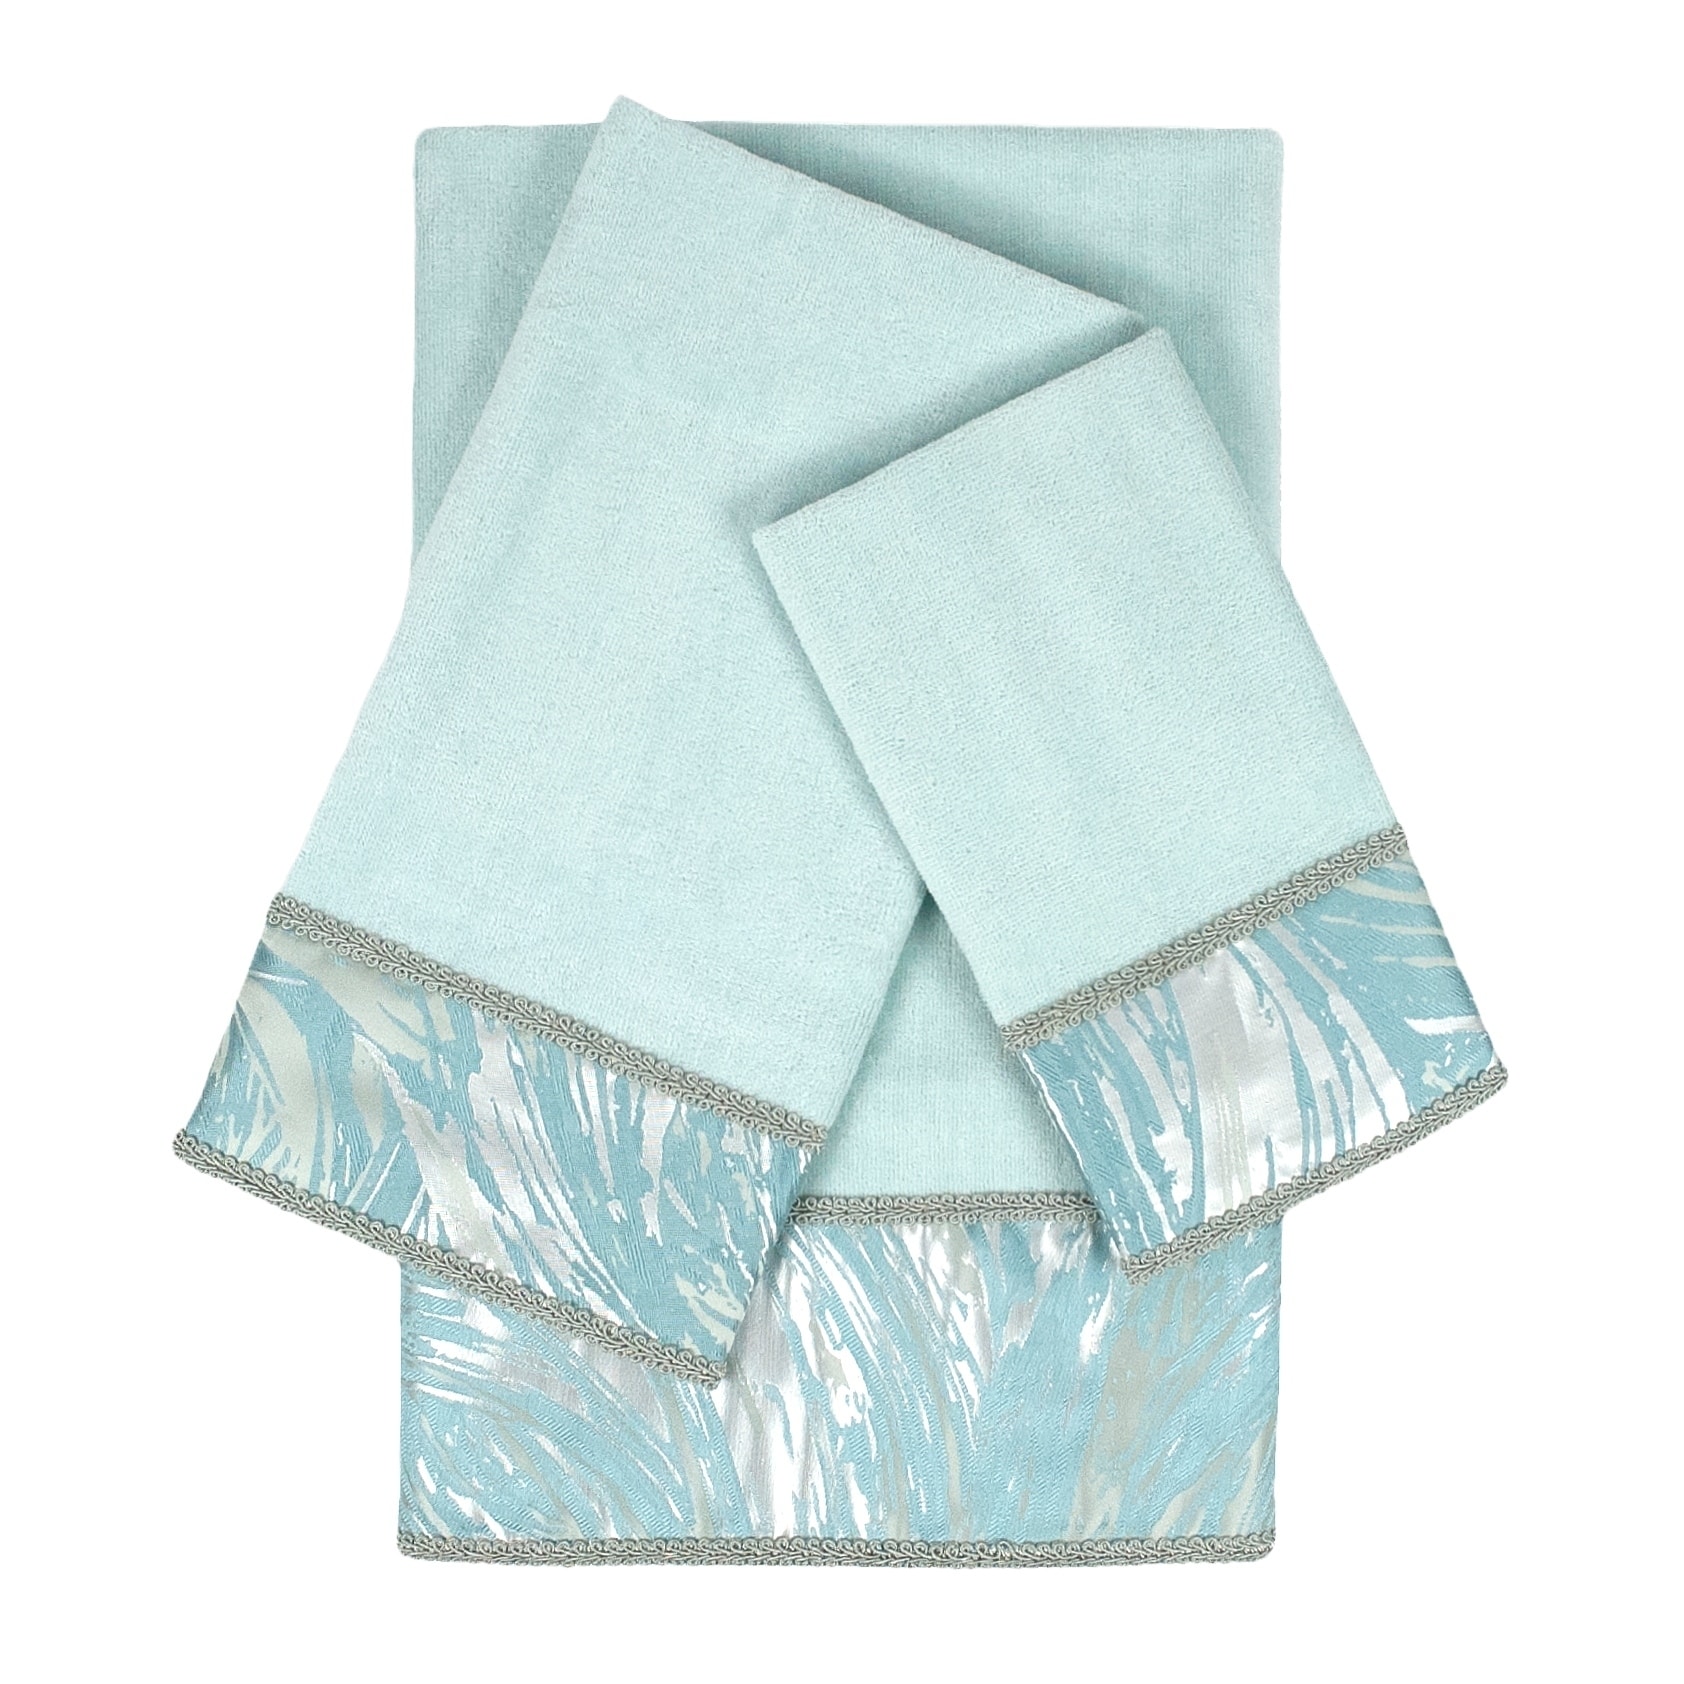 Sherry Kline Cynthaina Sea mist 3-piece Embelished Towel Set